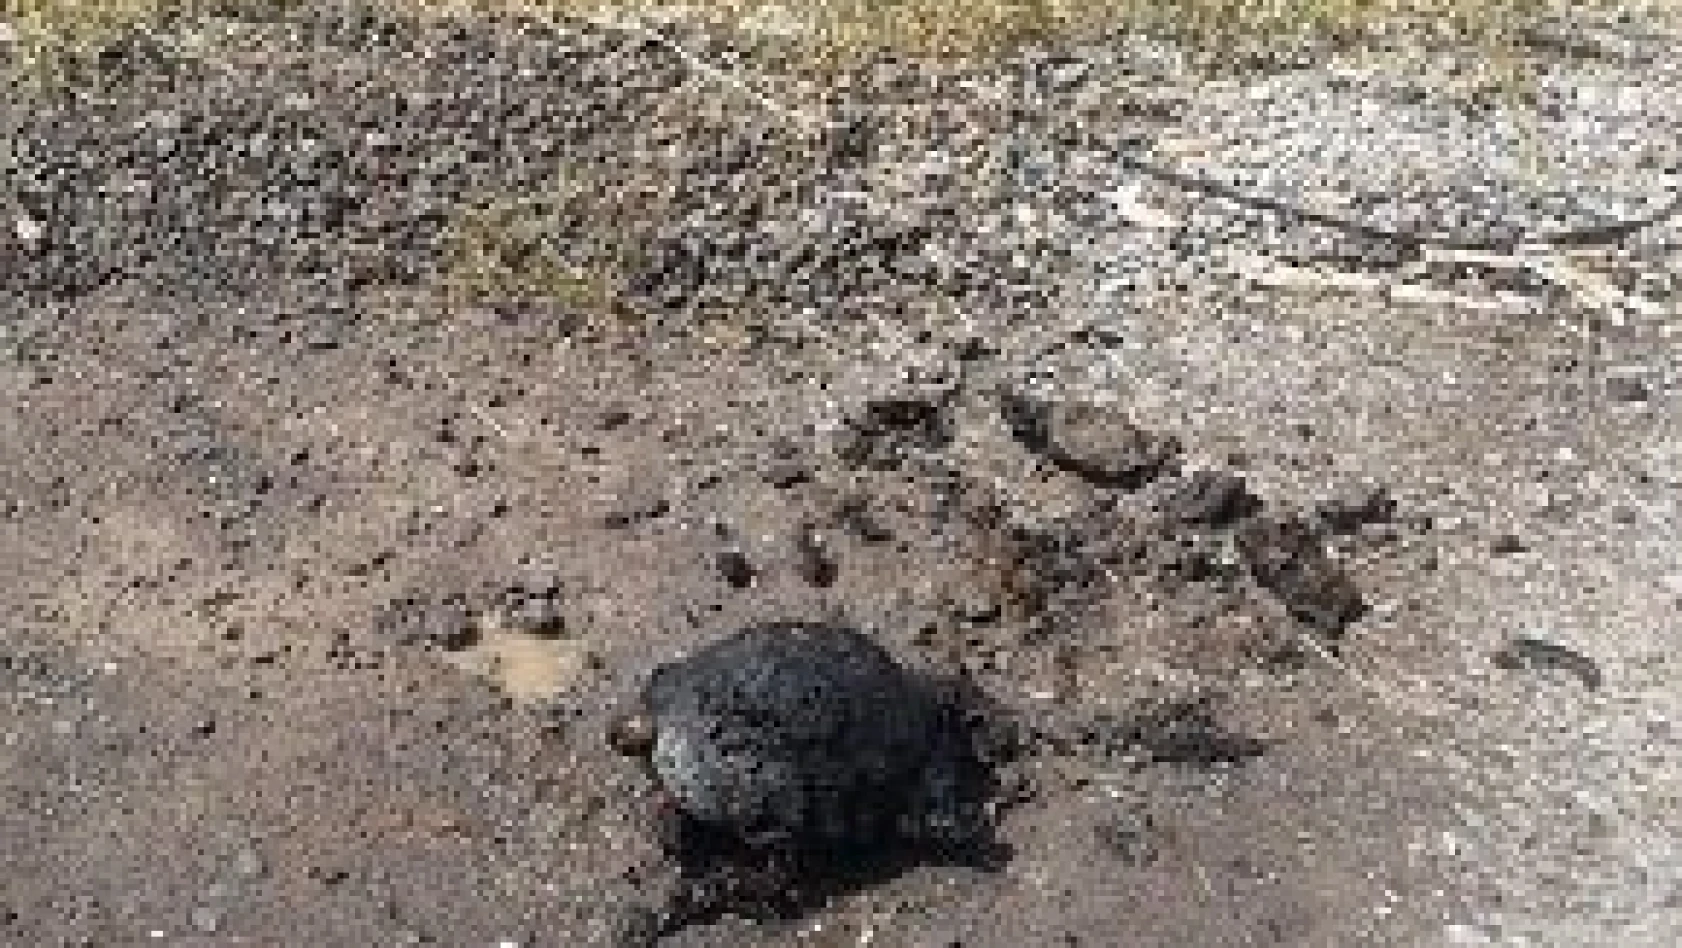 Ot yangınından kaçamayan kaplumbağa telef oldu